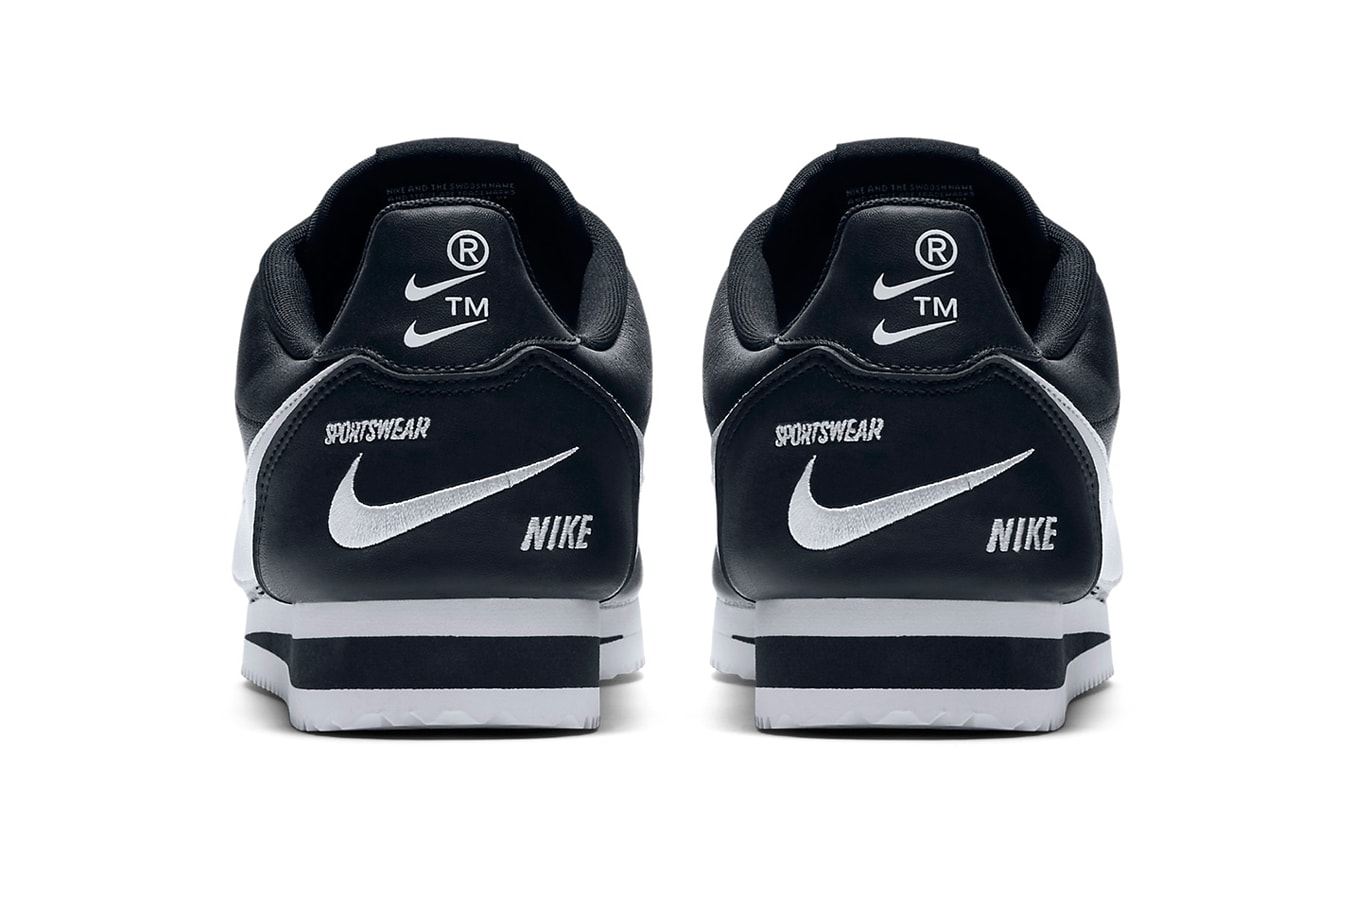 Nike Cortez Premium Black White release info sneakers leather